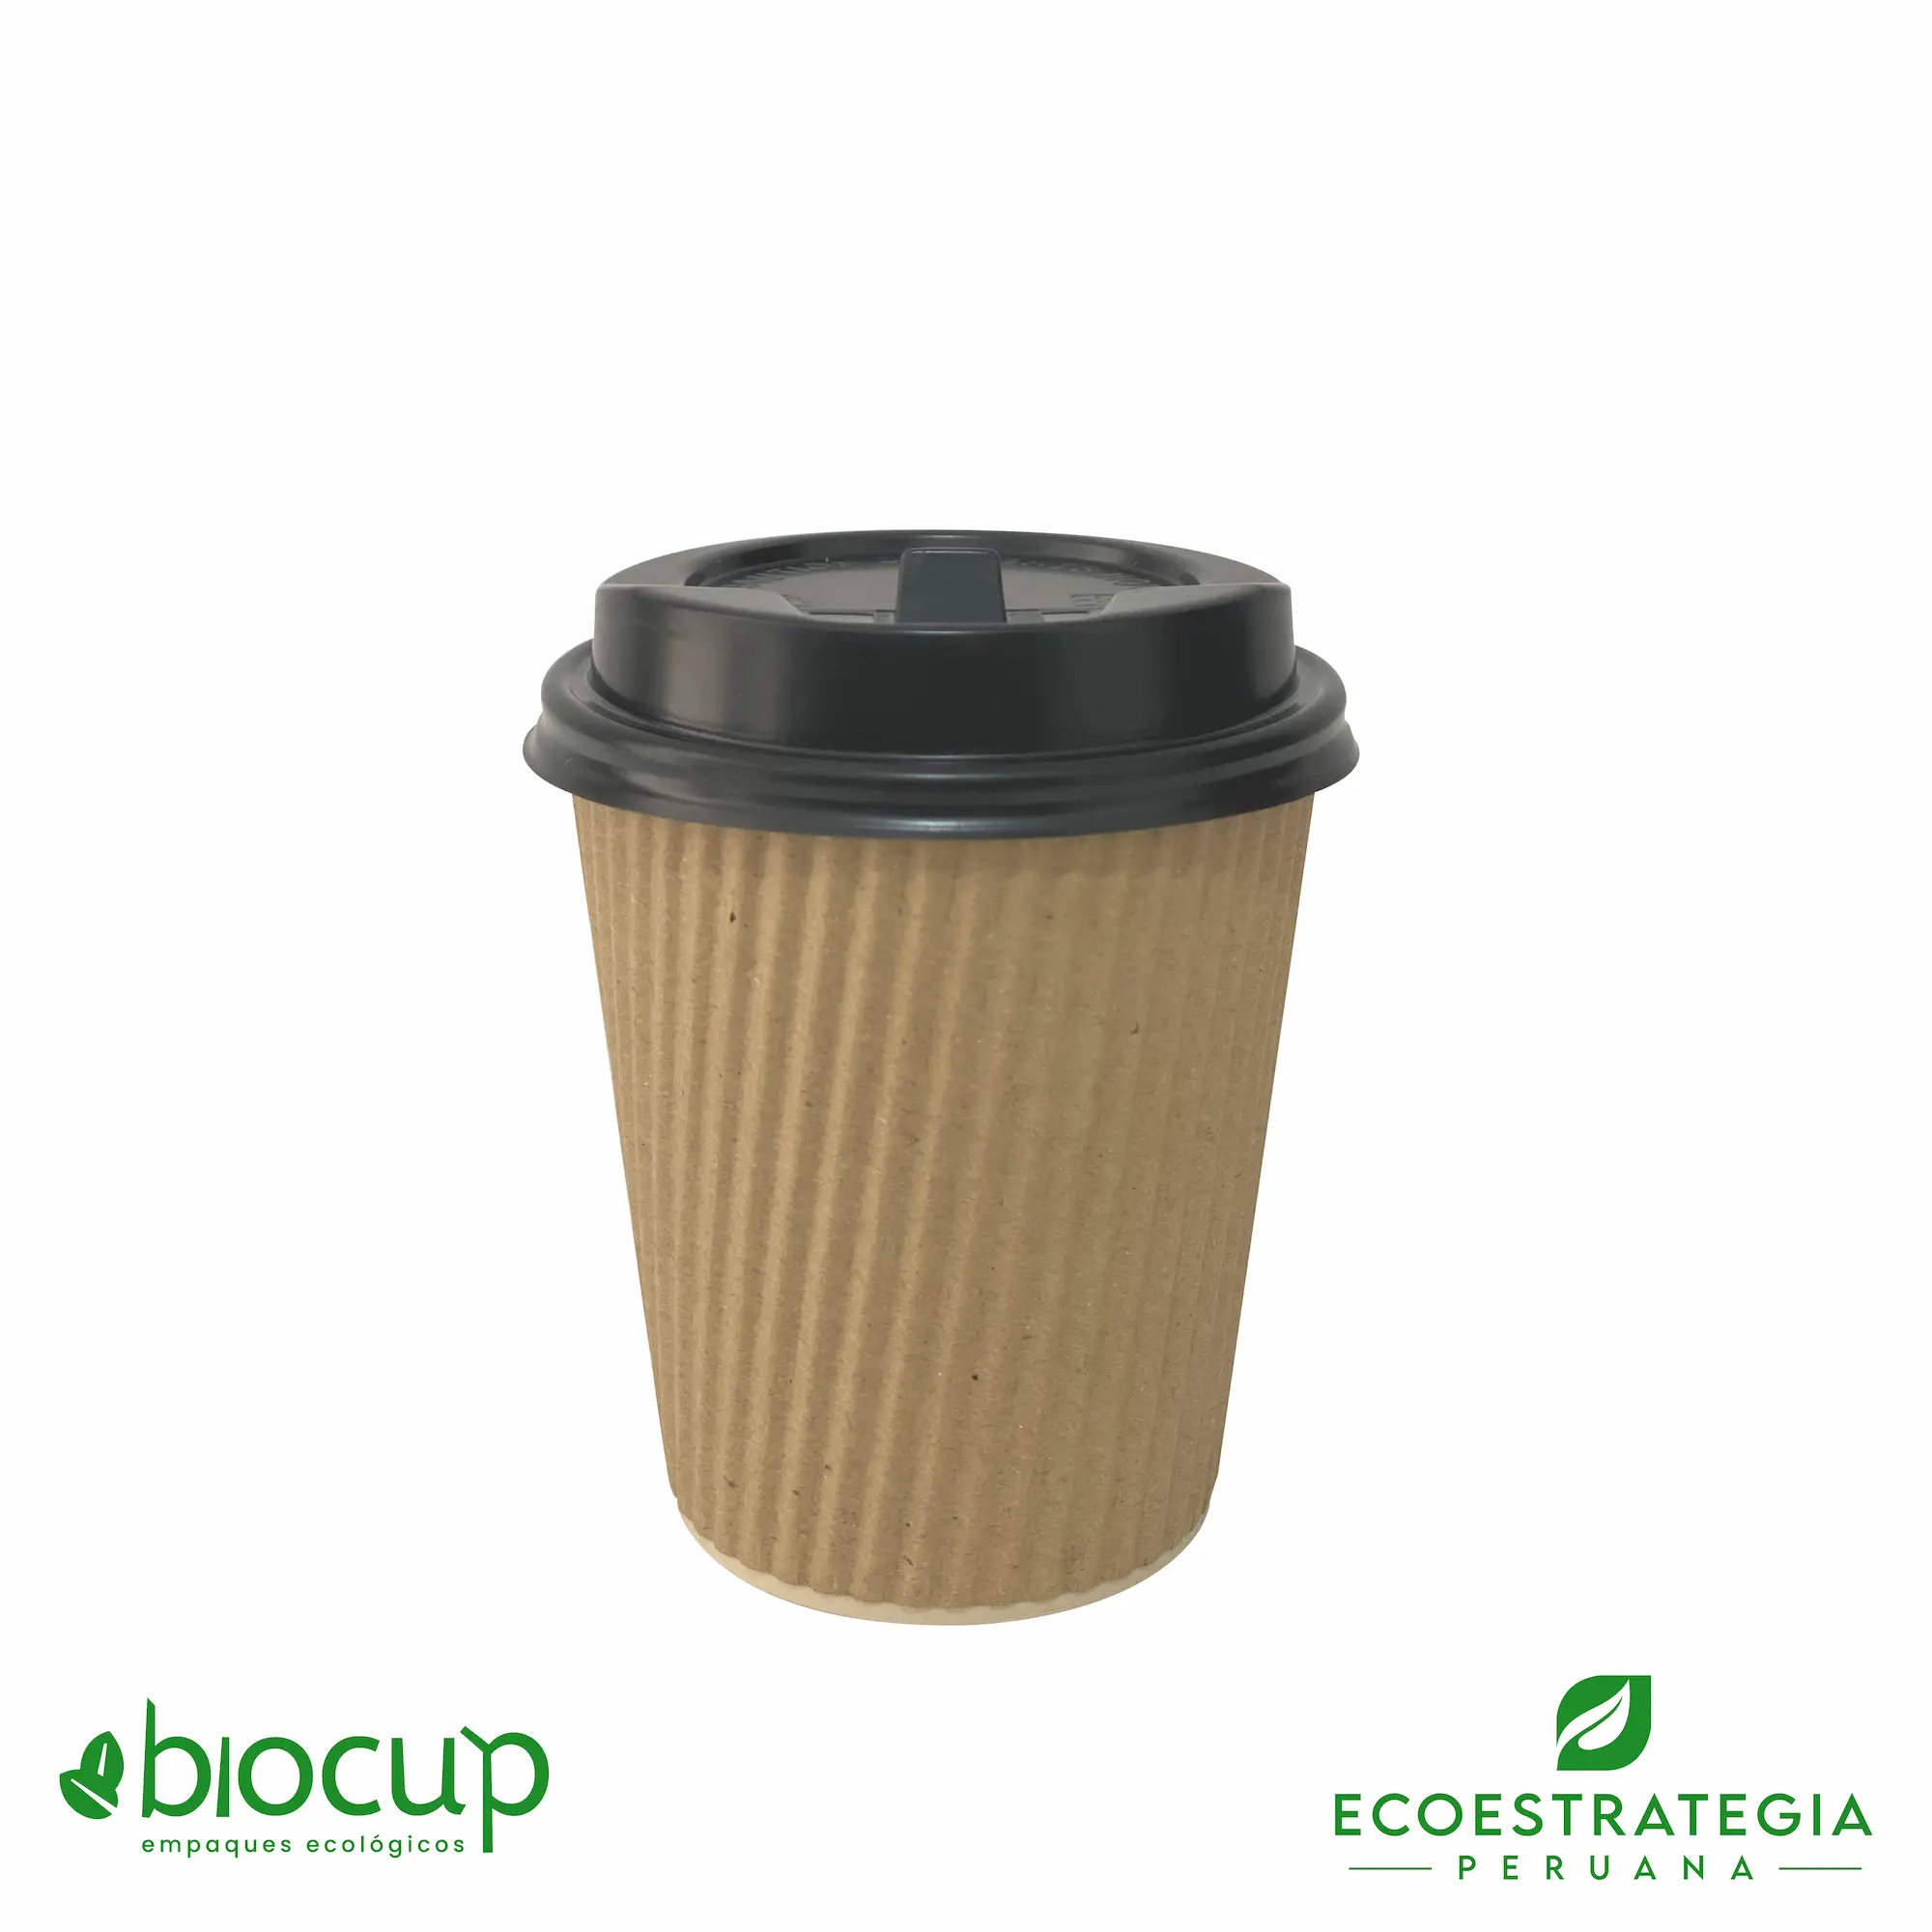 El vaso reciclable para bebidas calientes EP-BC8 también conocido como vasos corrugados 8 oz bambú, vasos corrugados biodegradables, vasos corrugados al por mayor, vasos corrugados biodegradables Perú, vasos biodegradables 8oz, vasos corrugados personalizable, vasos biodegradables con tapa 8oz, vasos biodegradables material, vasos biodegradables 8 oz precio, vasos para bebidas calientes 8 oz, vasos ecológicos 8 oz, vasos compostables 8 oz, vasos sostenibles 8 oz, vaso liso bioform 8 oz, vaso ripple 8 oz, vaso eco cup 8 oz, importador de vasos corrugado, fabricante de vasos corrugados, distribuidores de vasos corrugados, mayoristas de vasos corrugados, vasos corrugados lima perú